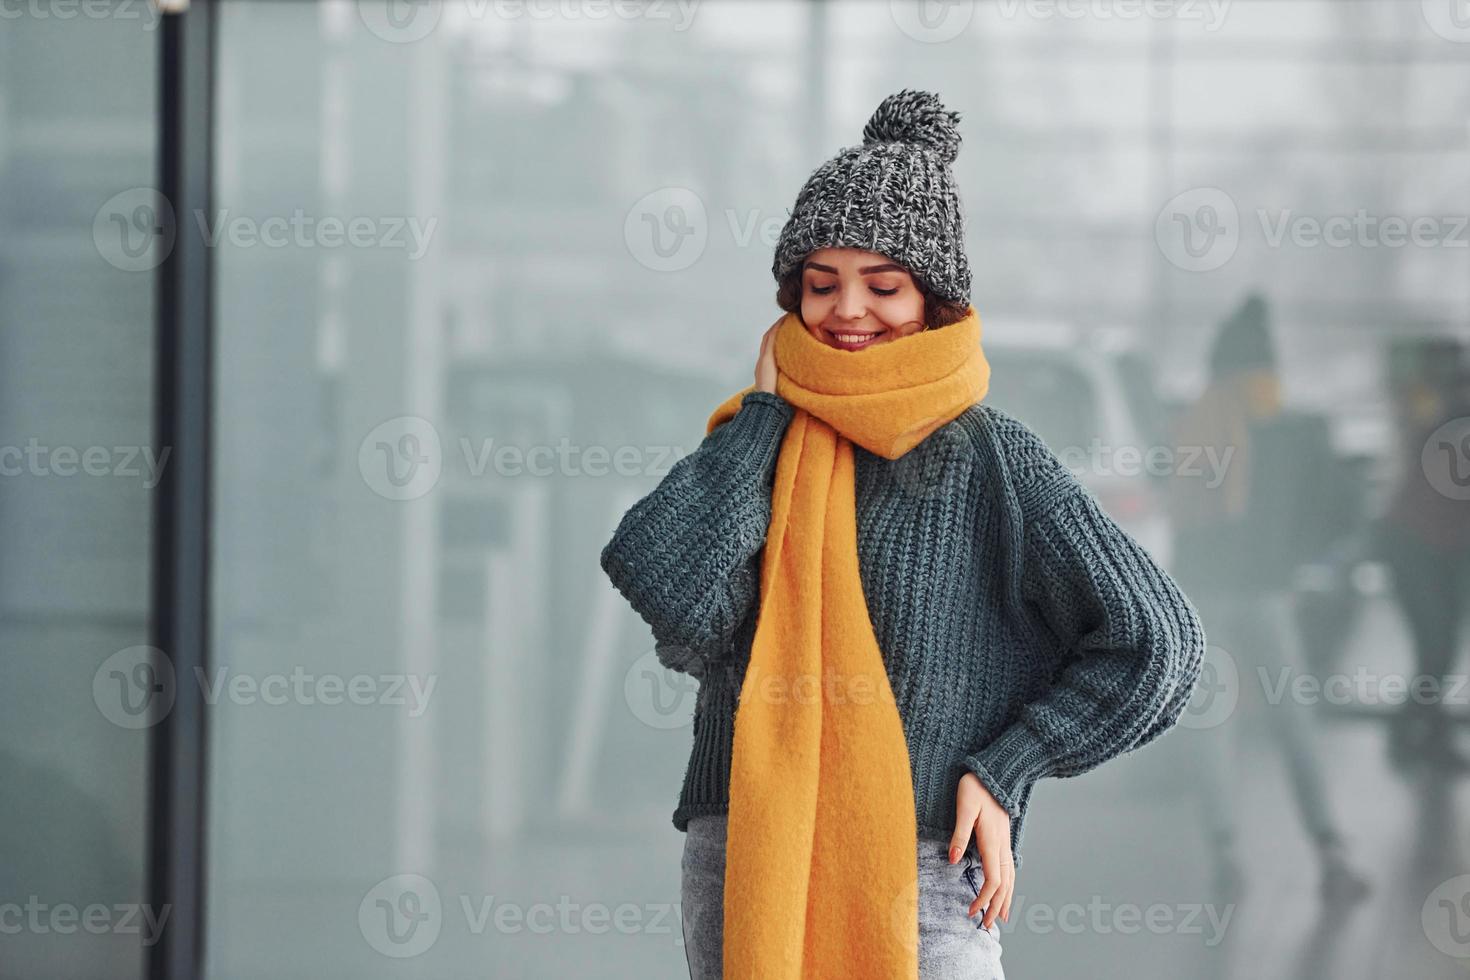 mooi vrolijk meisje in geel sjaal en in warm kleren staand binnenshuis tegen achtergrond met reflecties foto